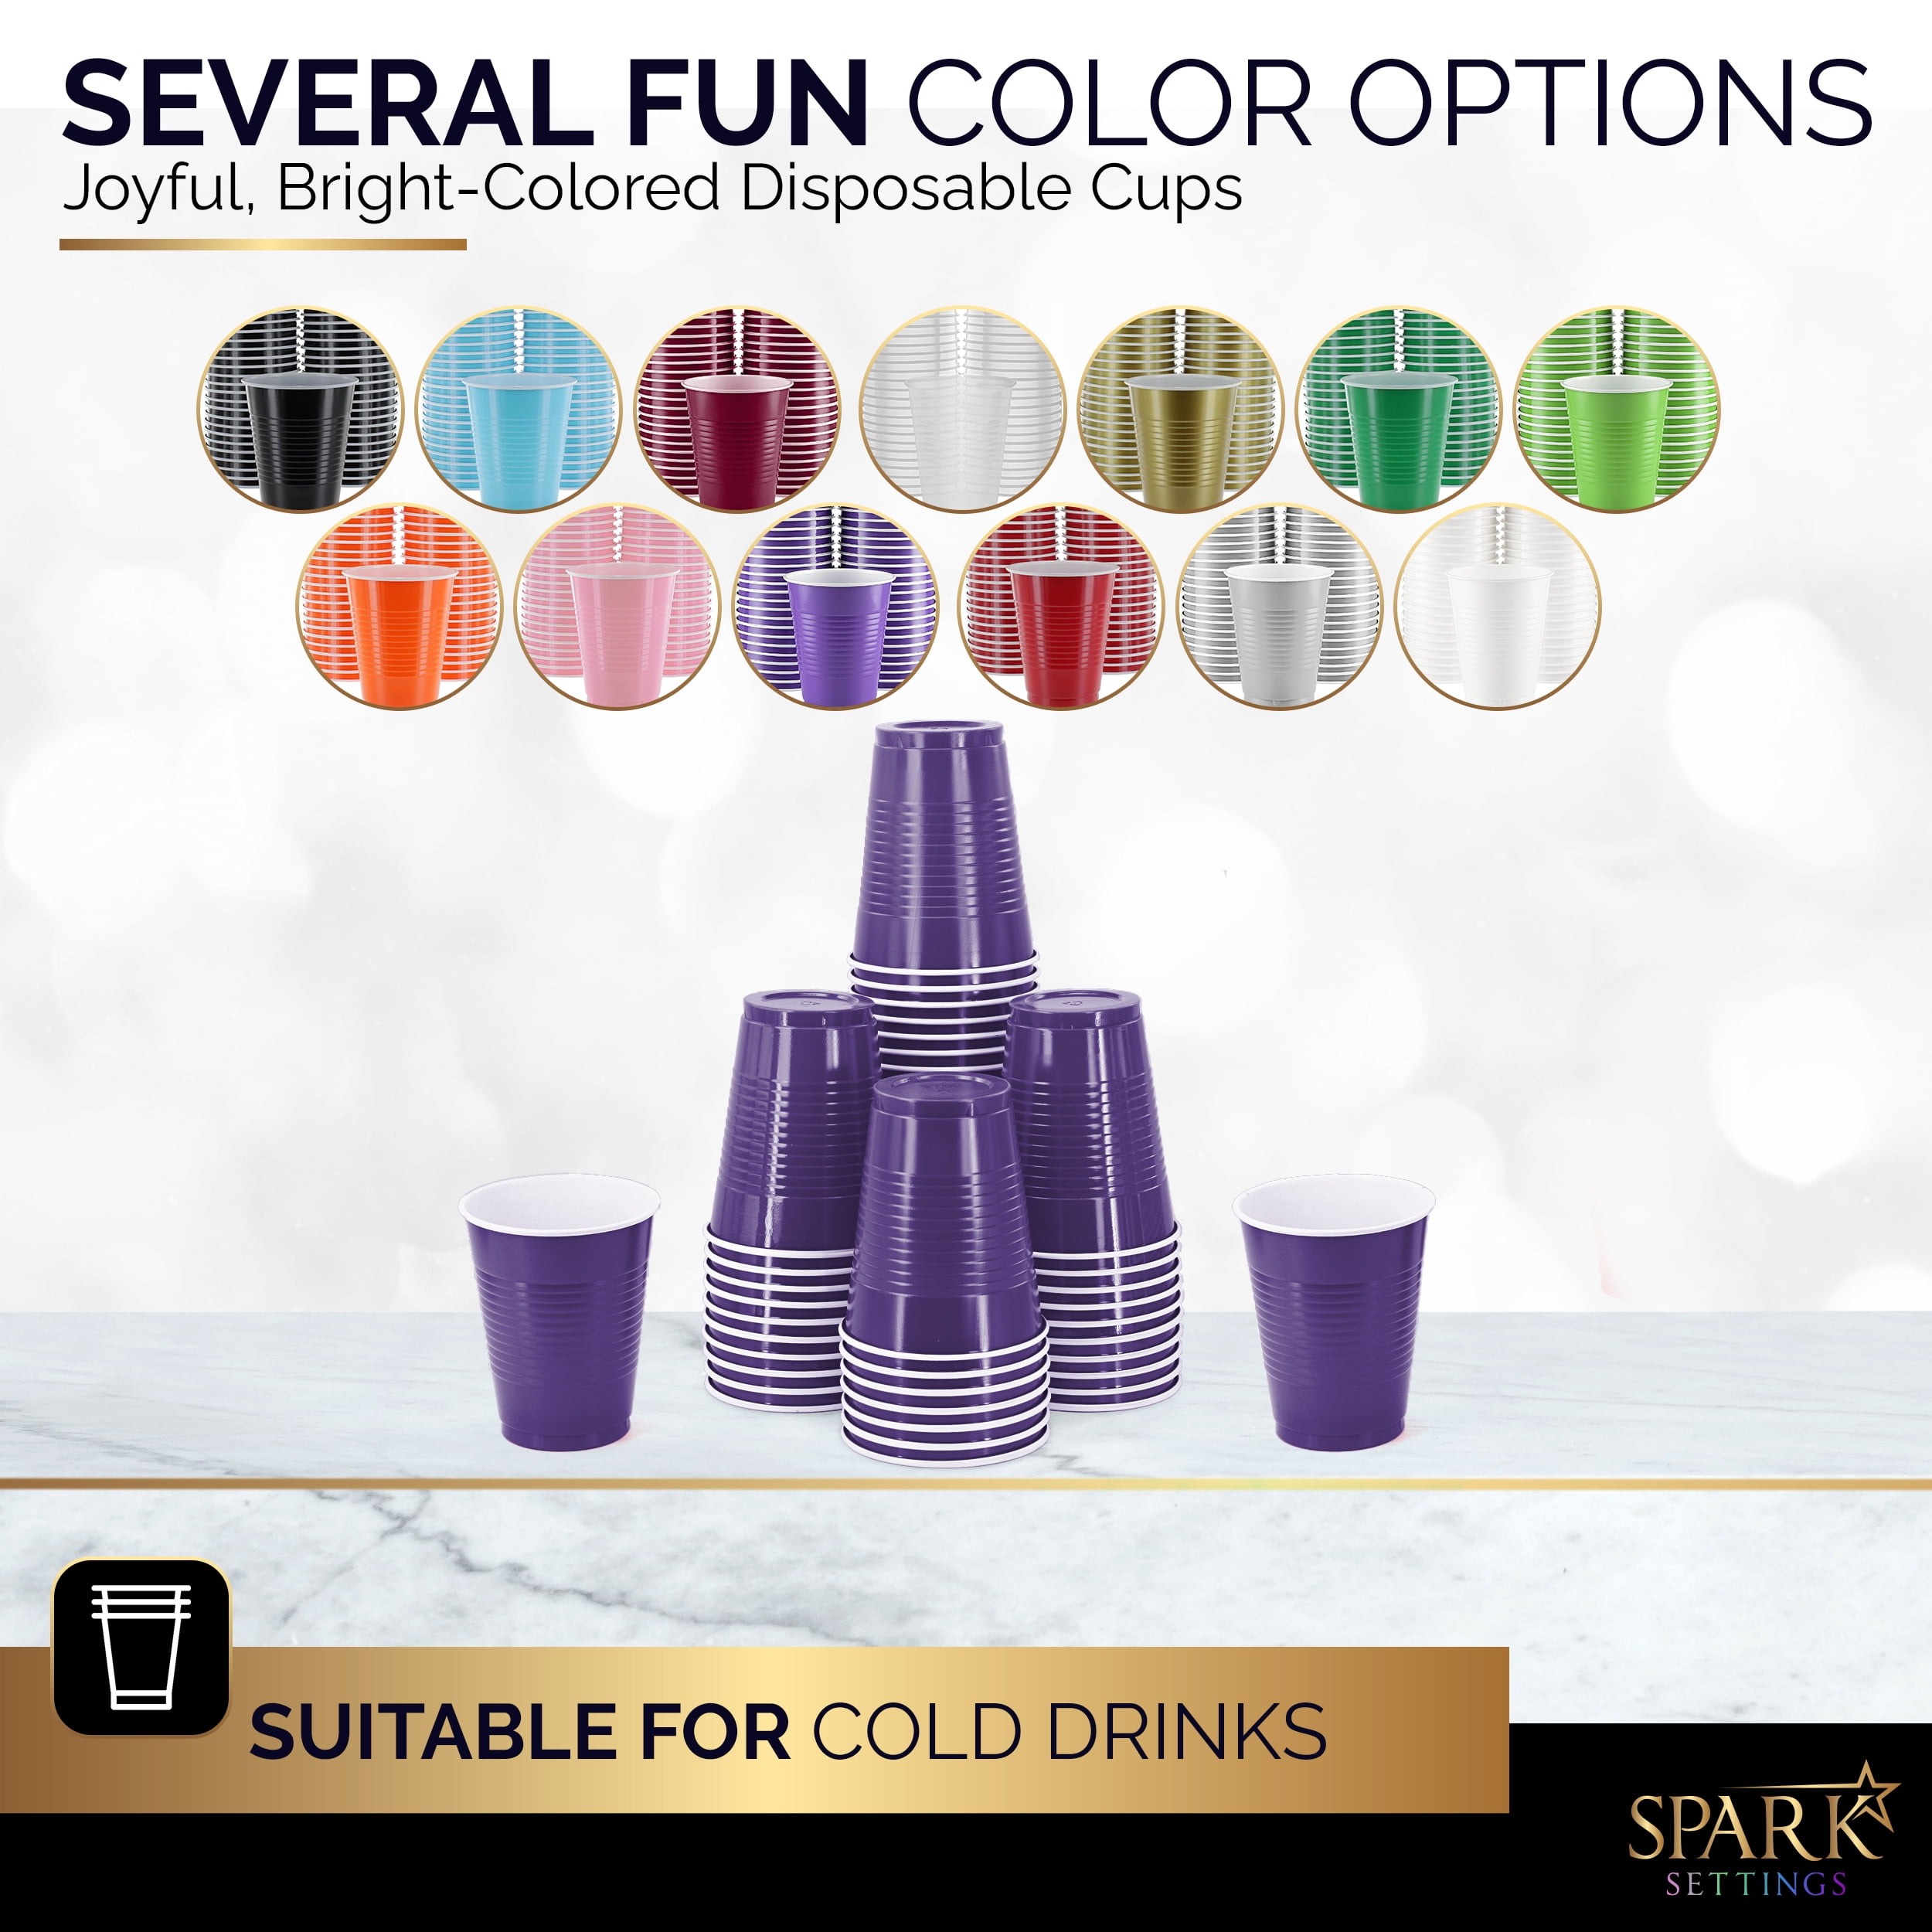 Party Decorations Lavender Plastic Cups - 50 Purple Matte 16 oz